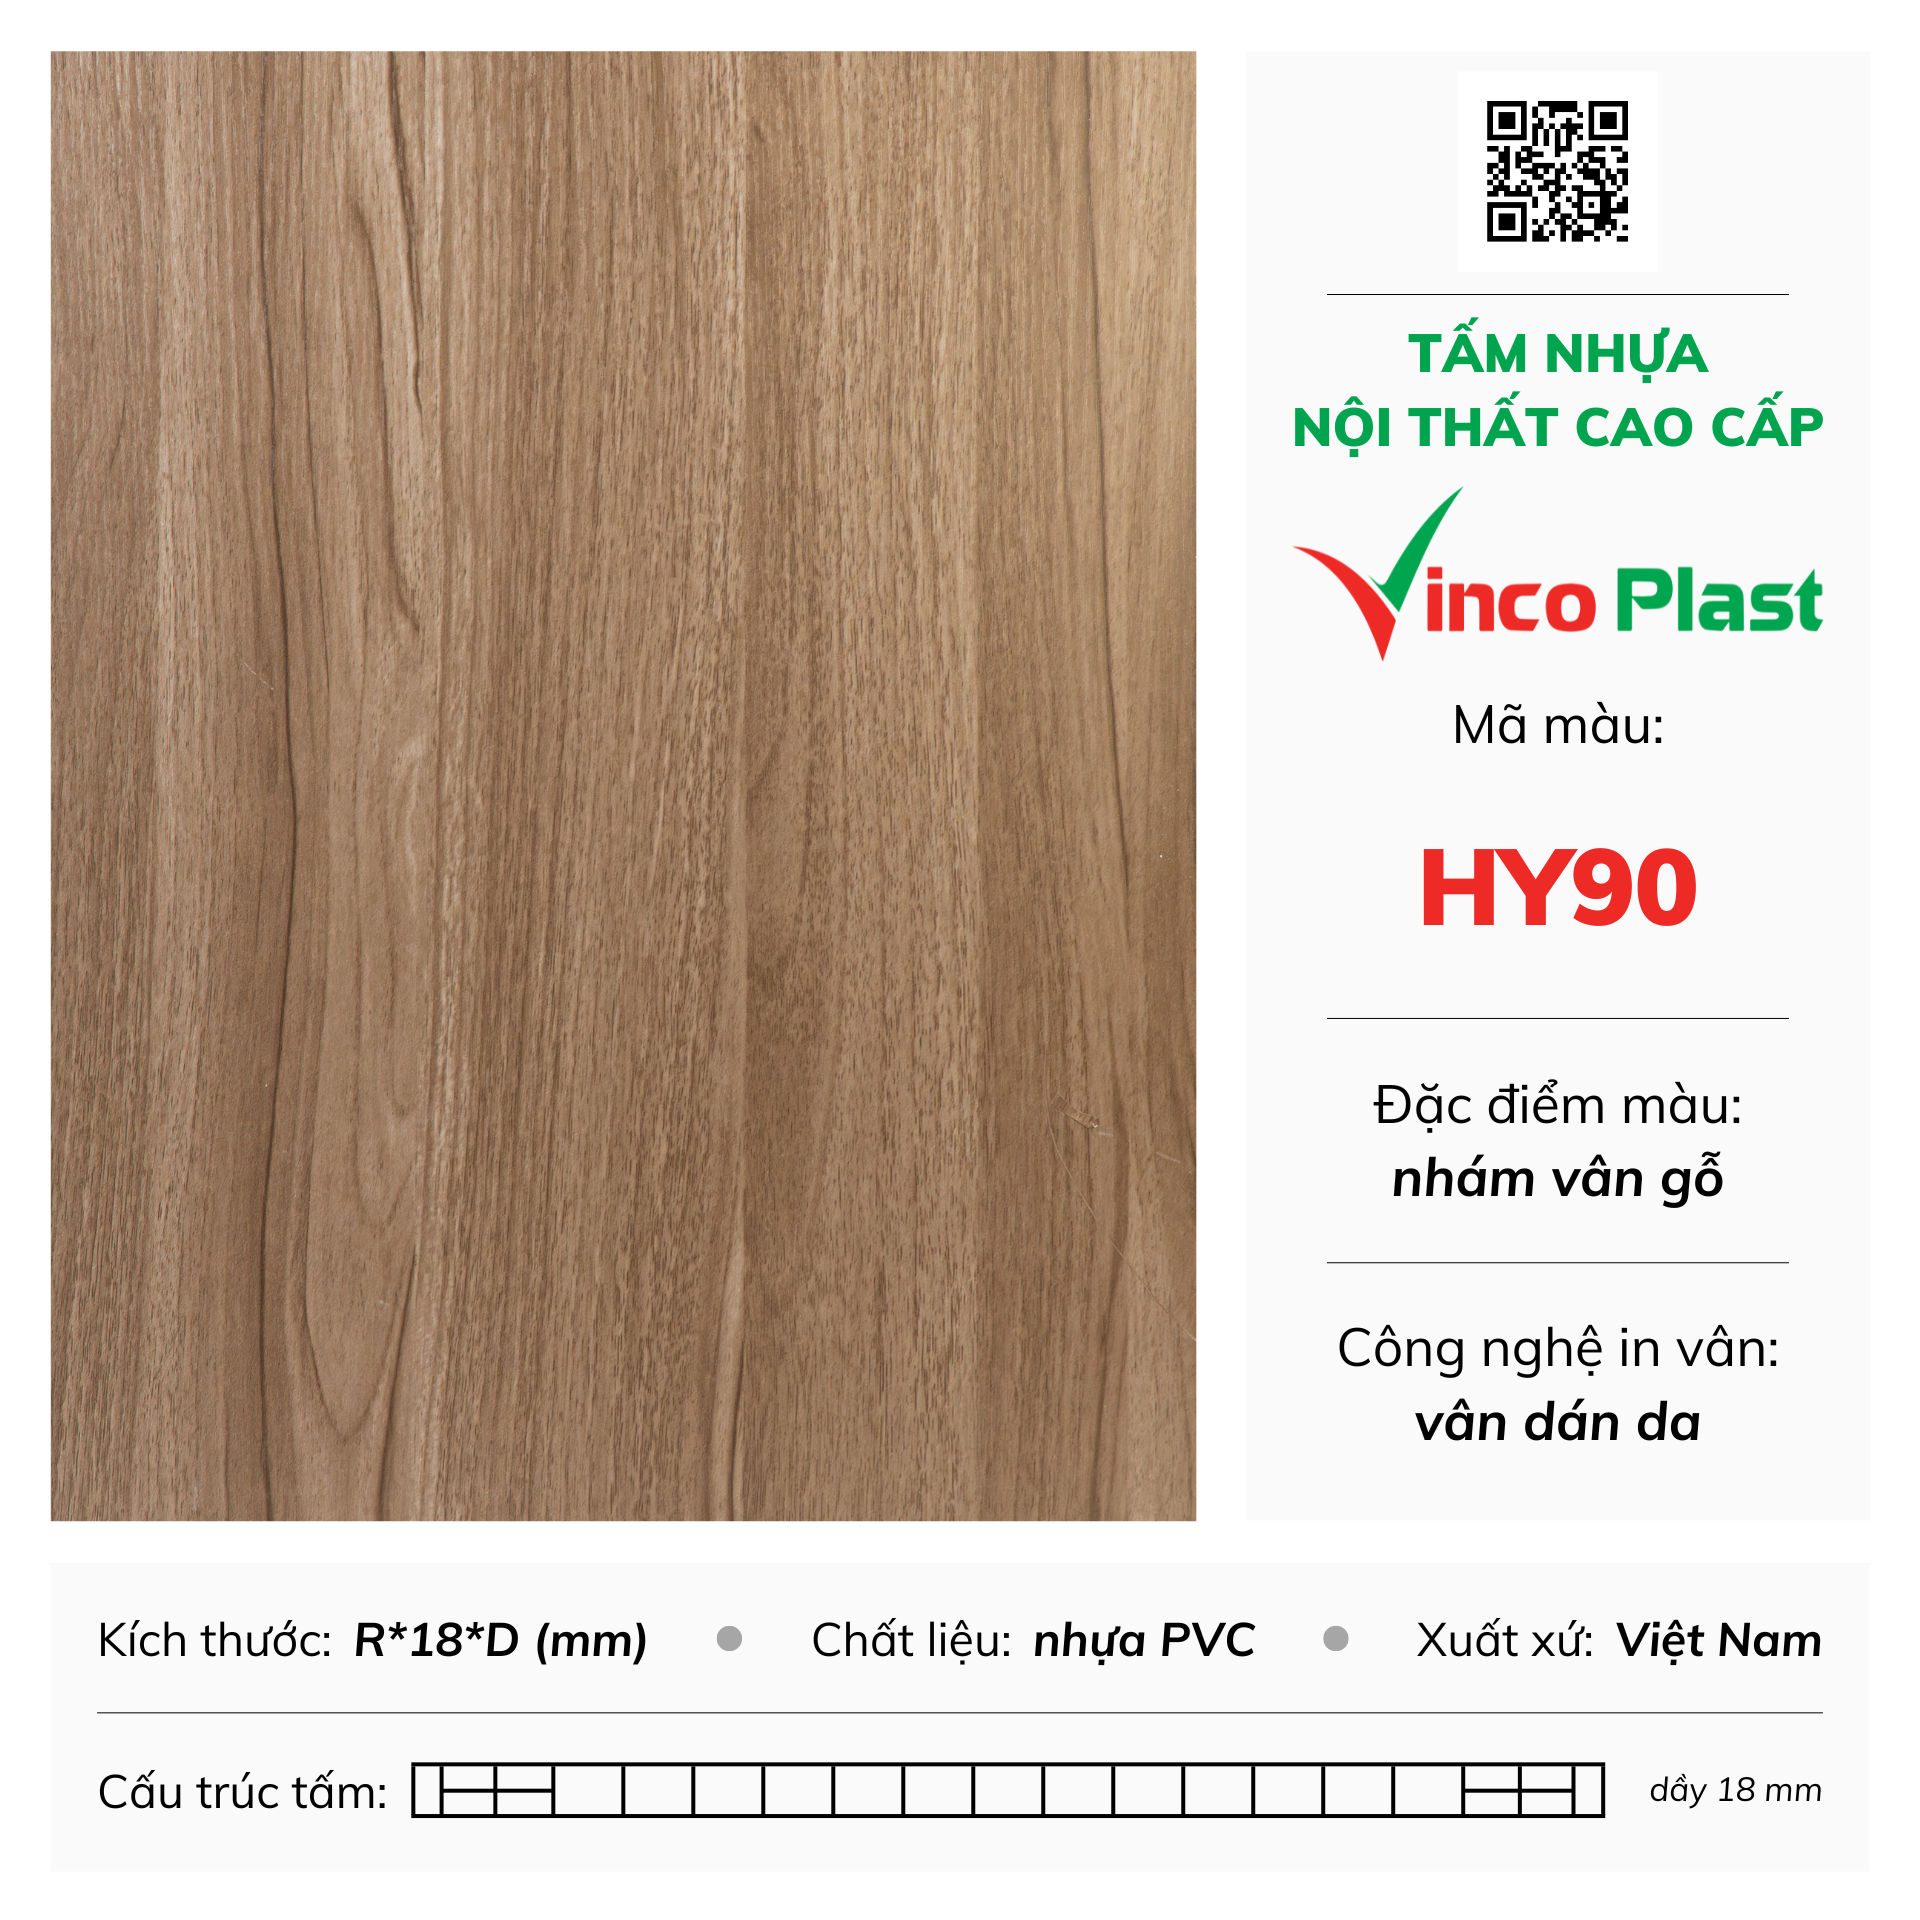 Tấm nhựa nội thất cao cấp Vincoplast màu hy90